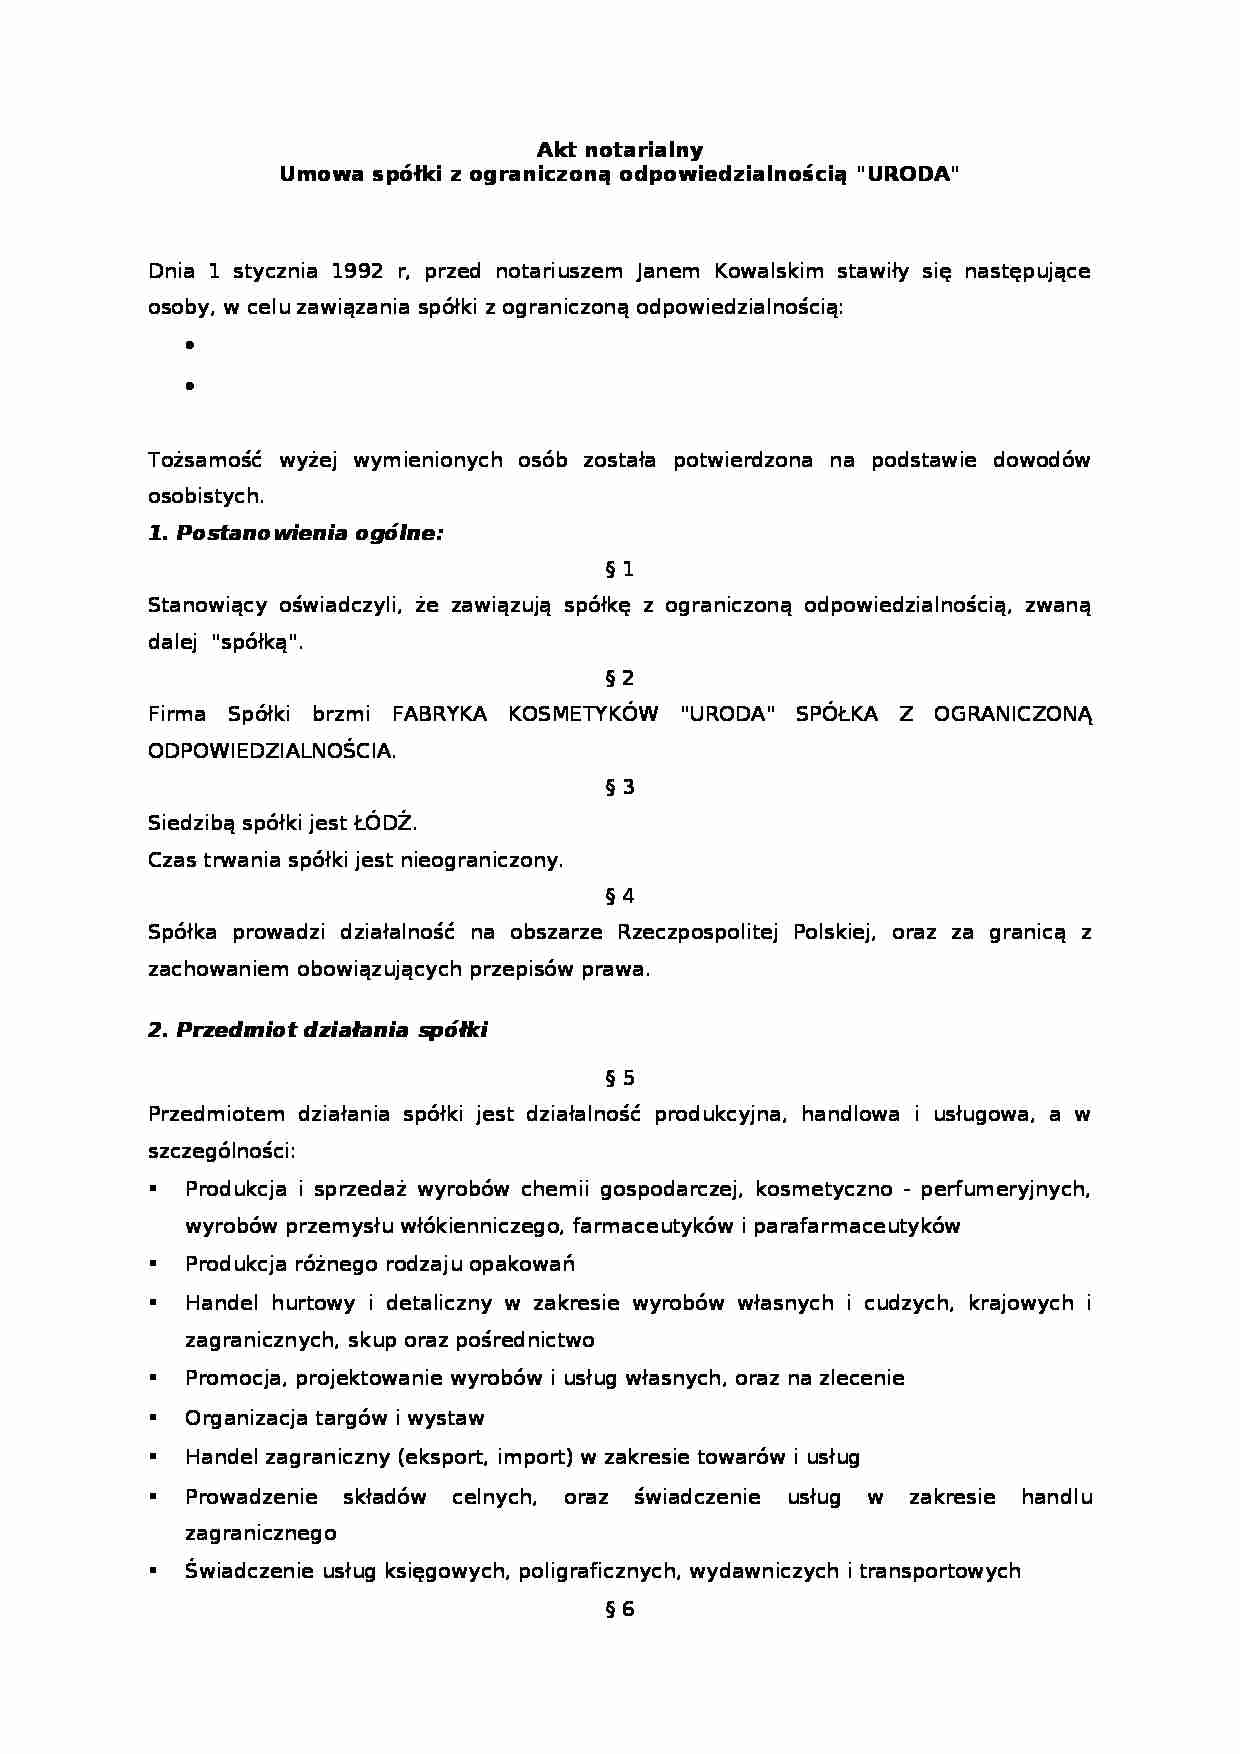 Biznes plan - Uroda Sp. z o.o. - prezentacja przedsiębiorstwa - strona 1